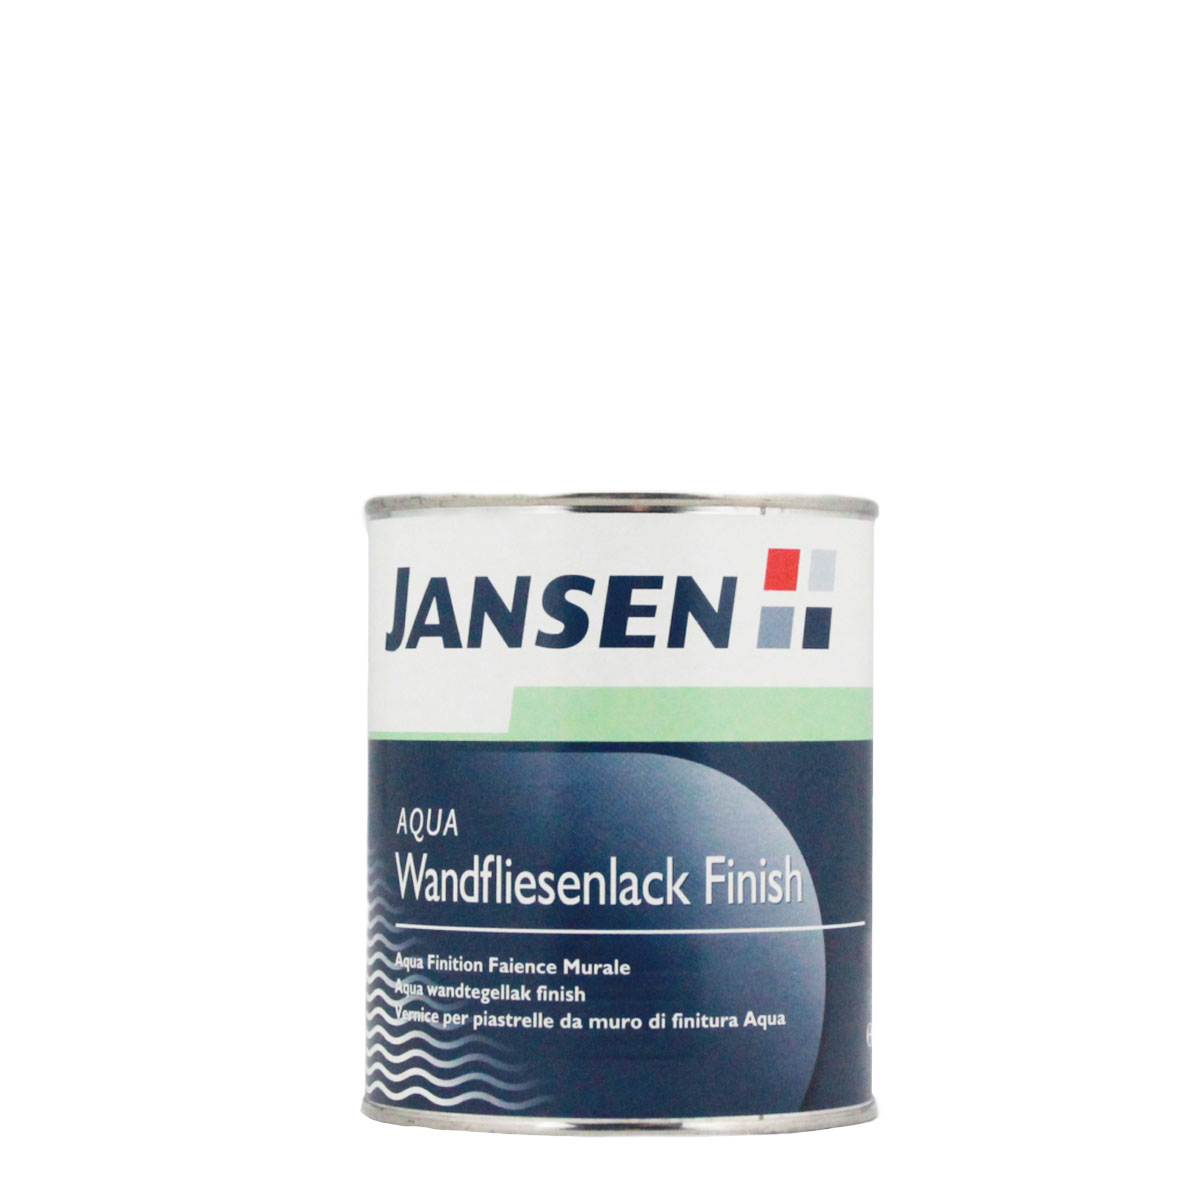 Jansen_aqua_wandfliesenlack-finish_gross